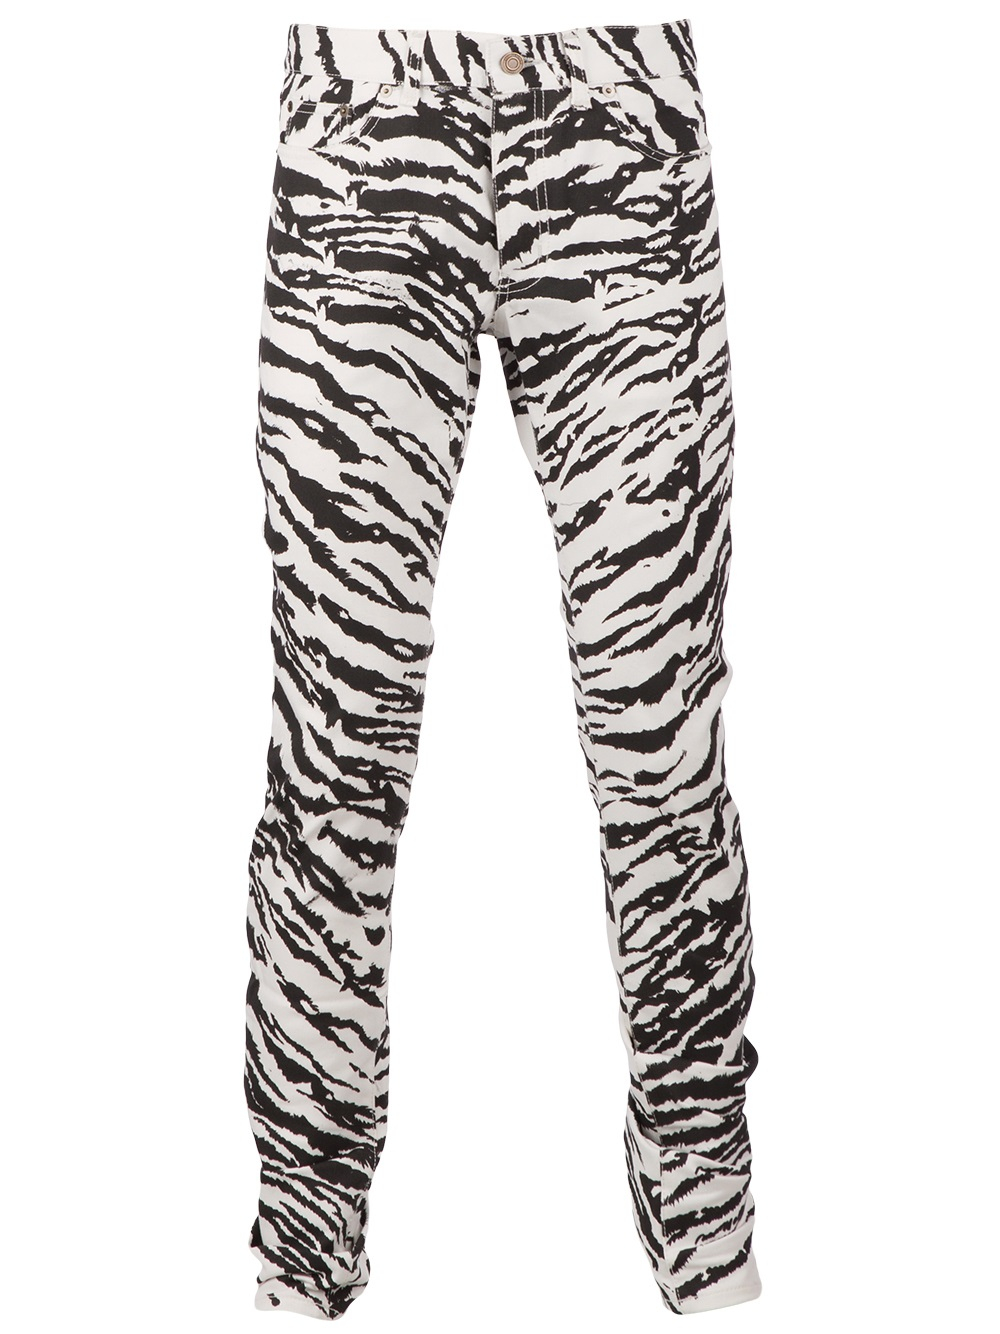 Saint Laurent Zebra Print Skinny Jean in White (Gray) for Men - Lyst